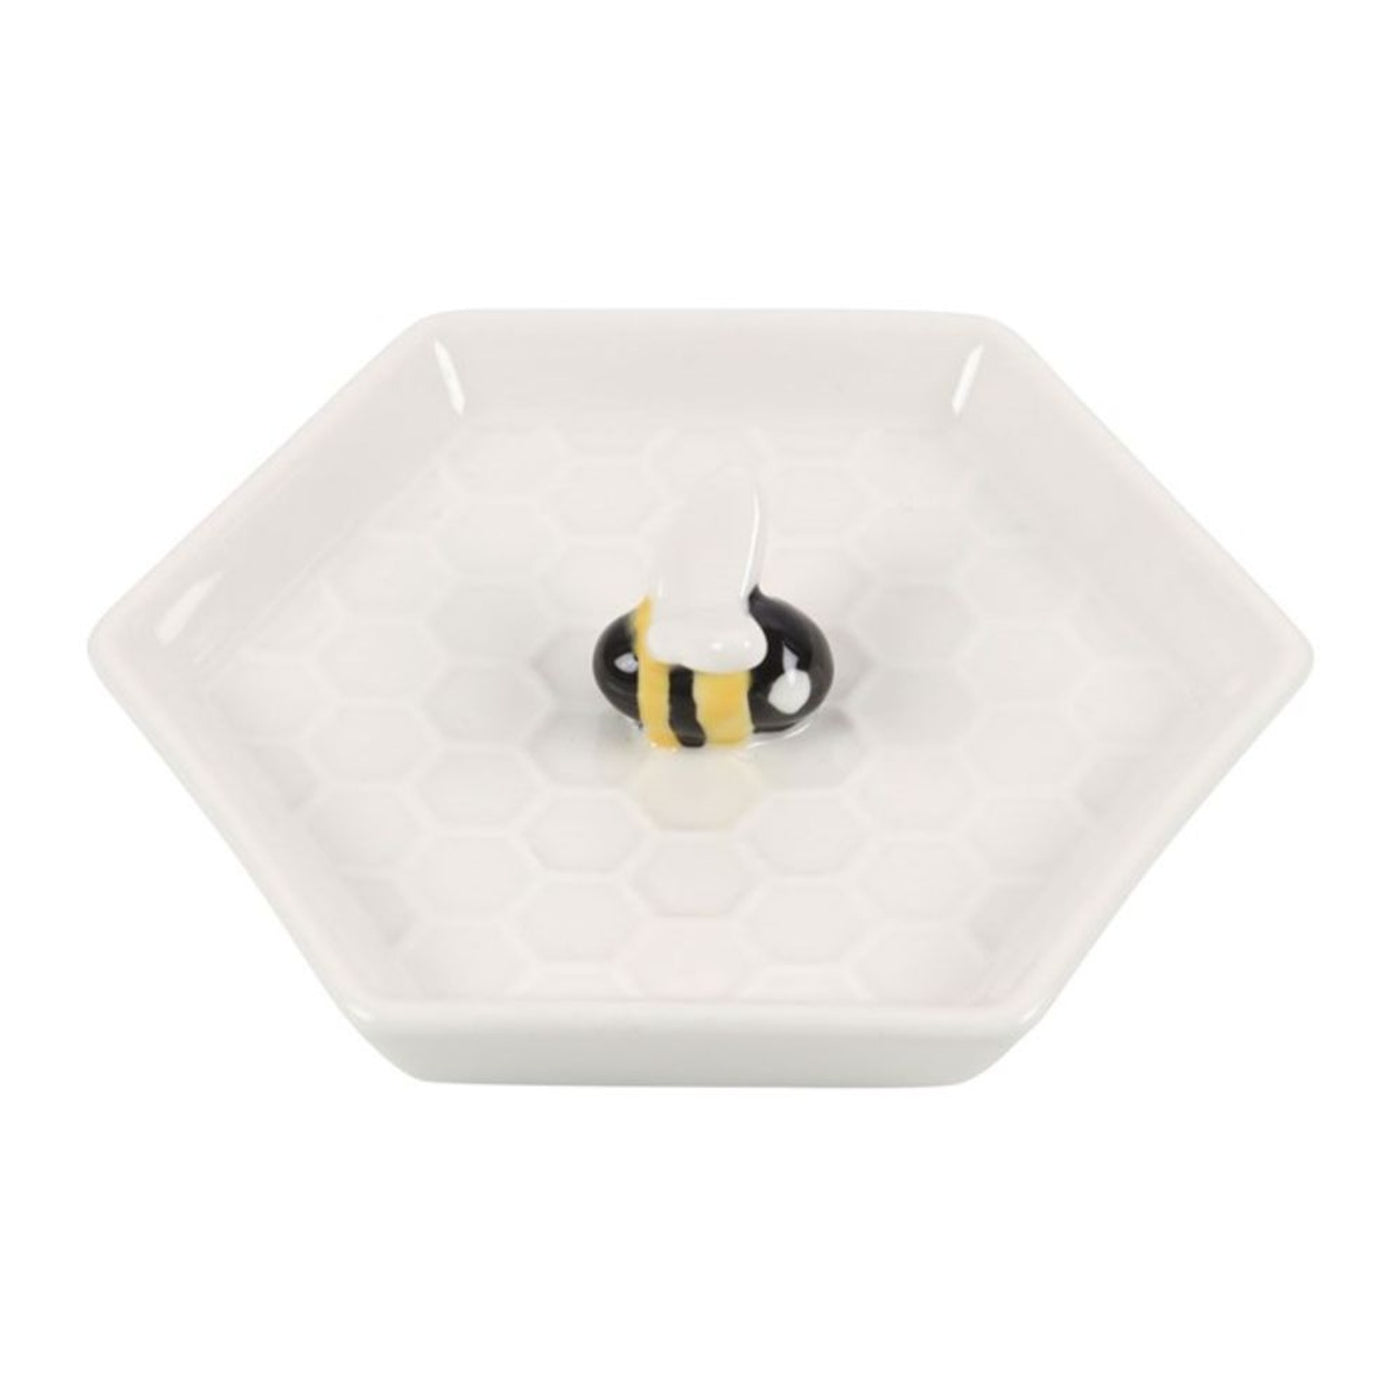 Bee White Ceramic Hexagonal Jewellery Trinket Dish.